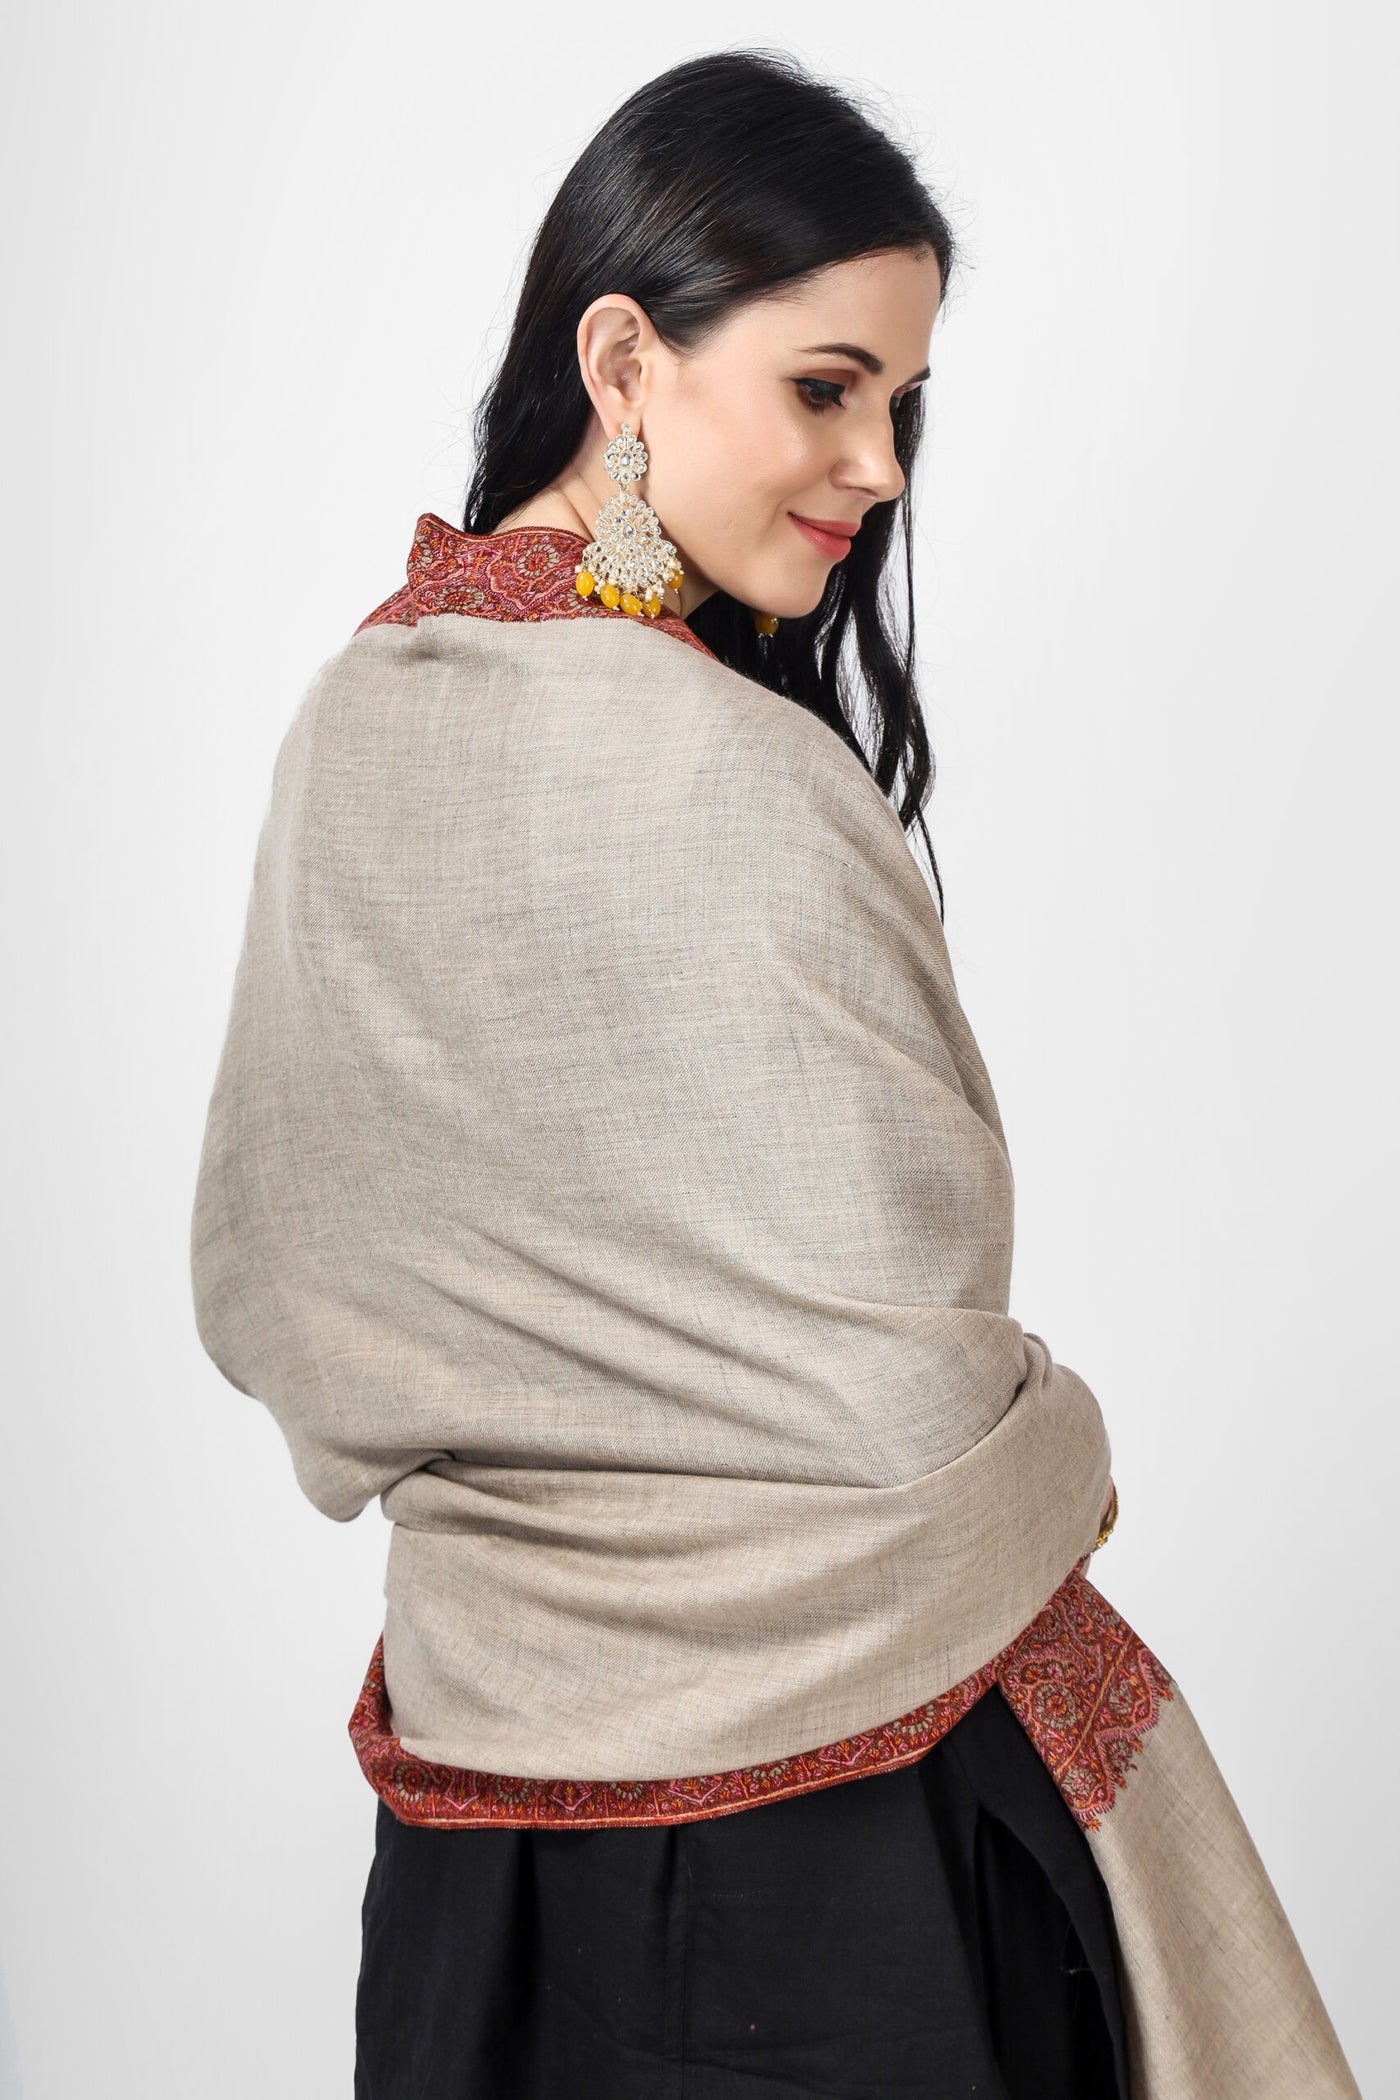 khudrang natural Pashmina border  sozni shawl